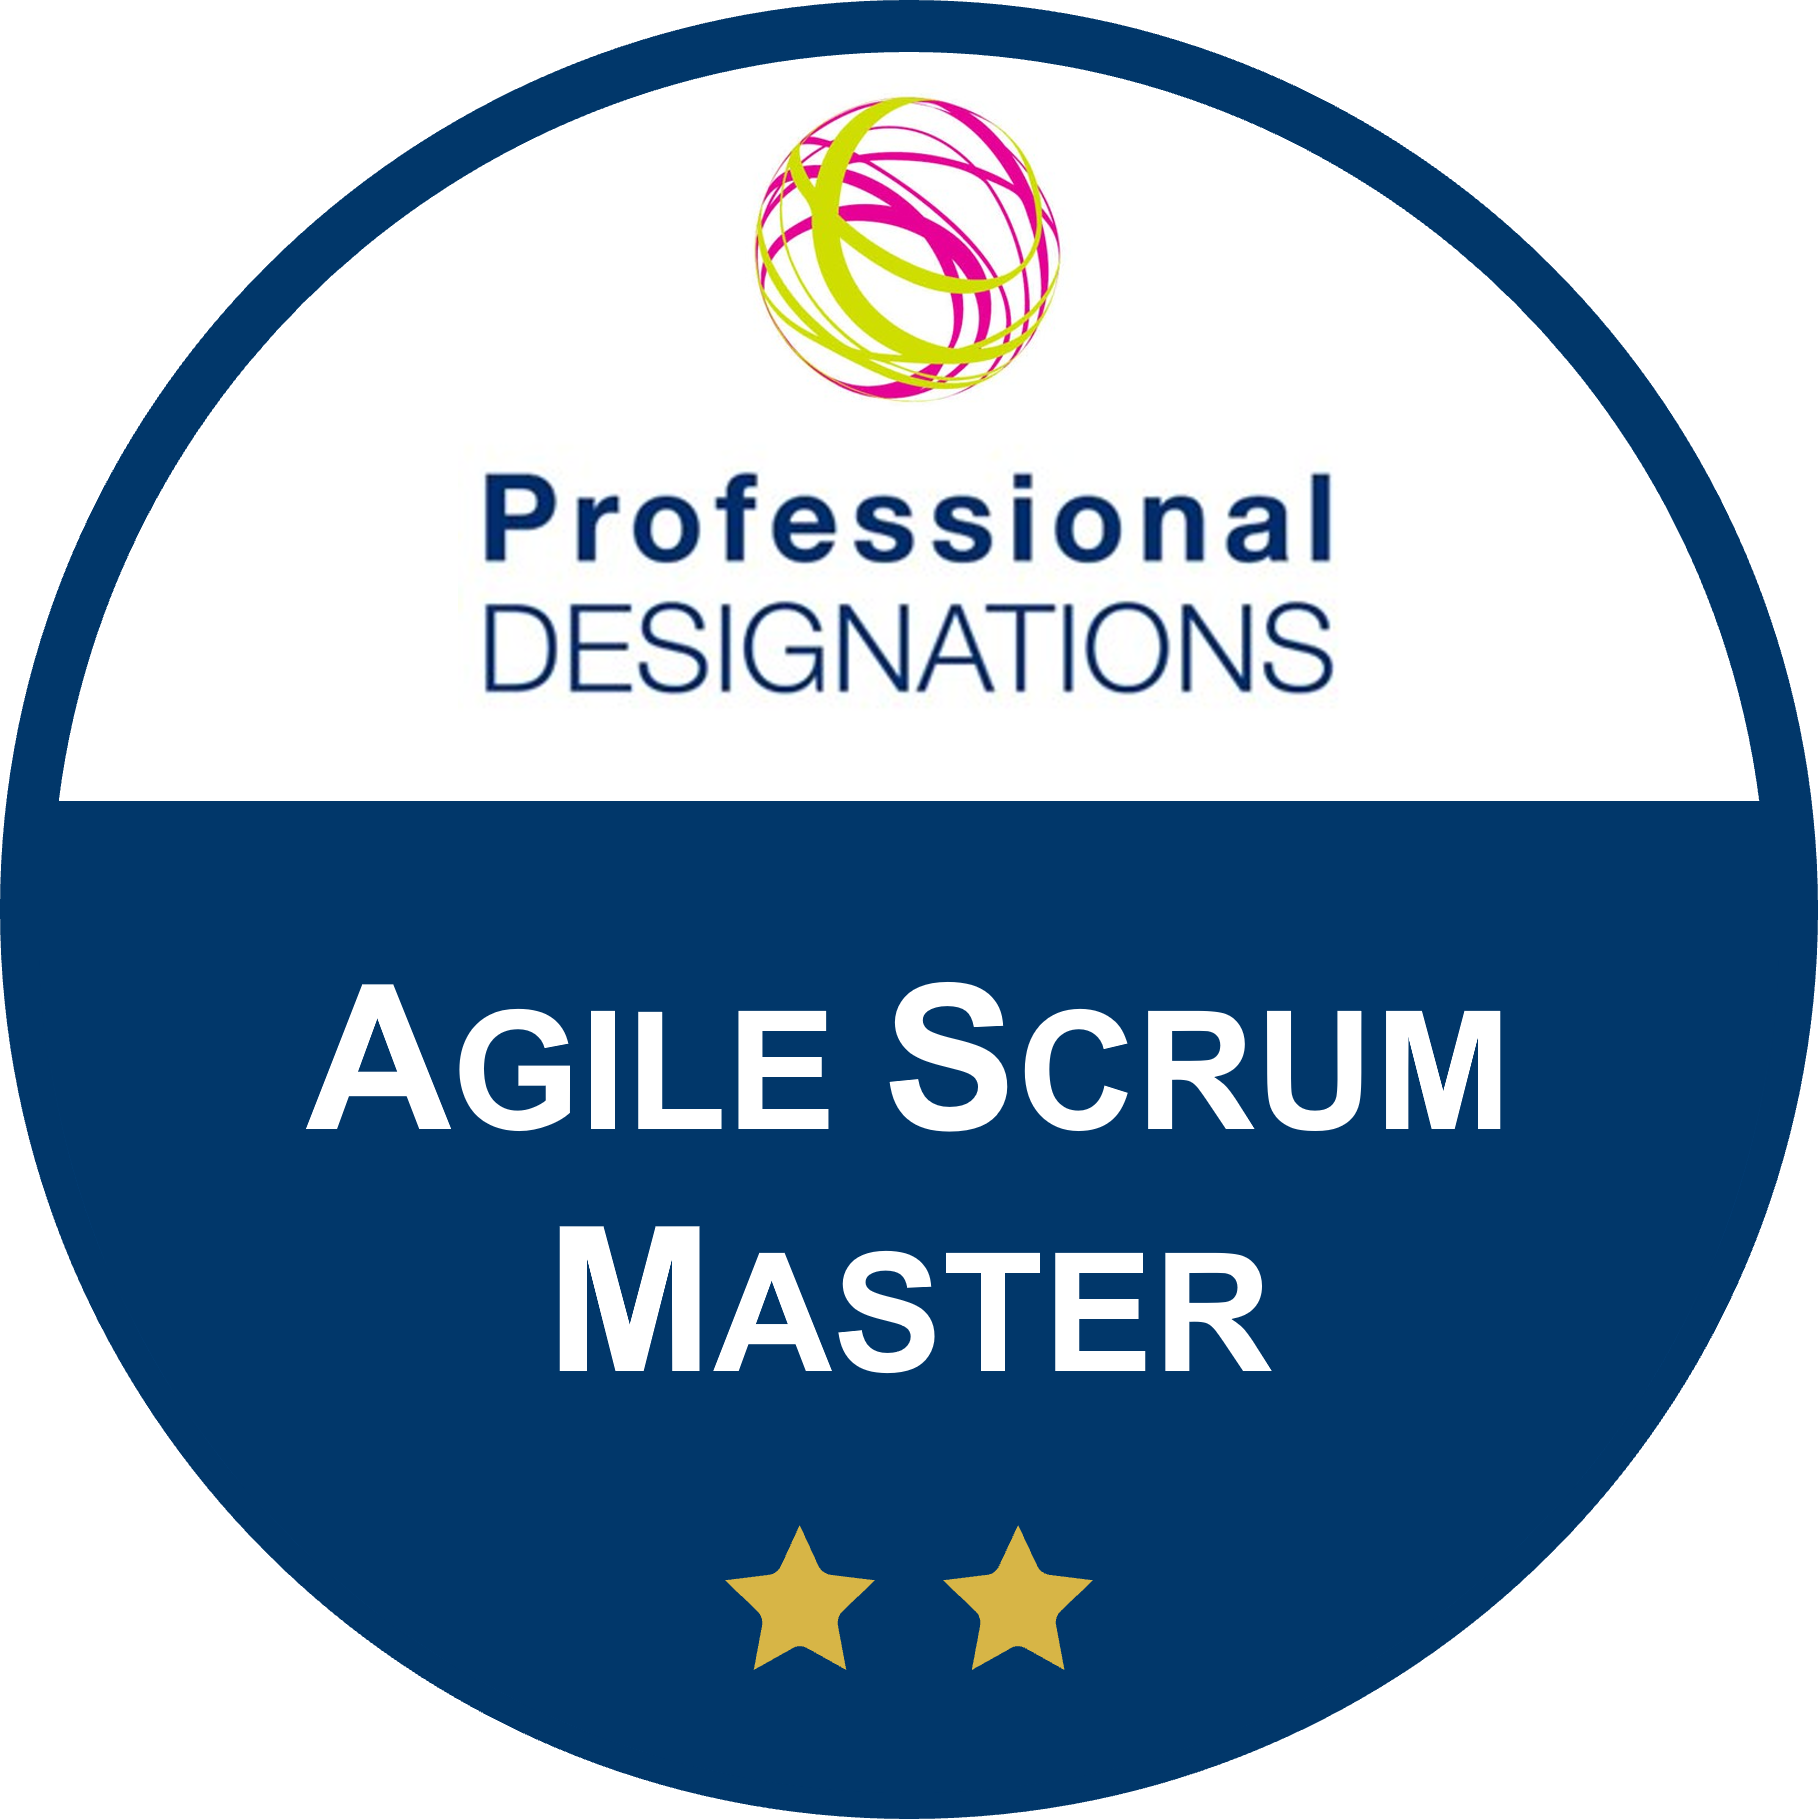 Agile Scrum Master - Professional Designations